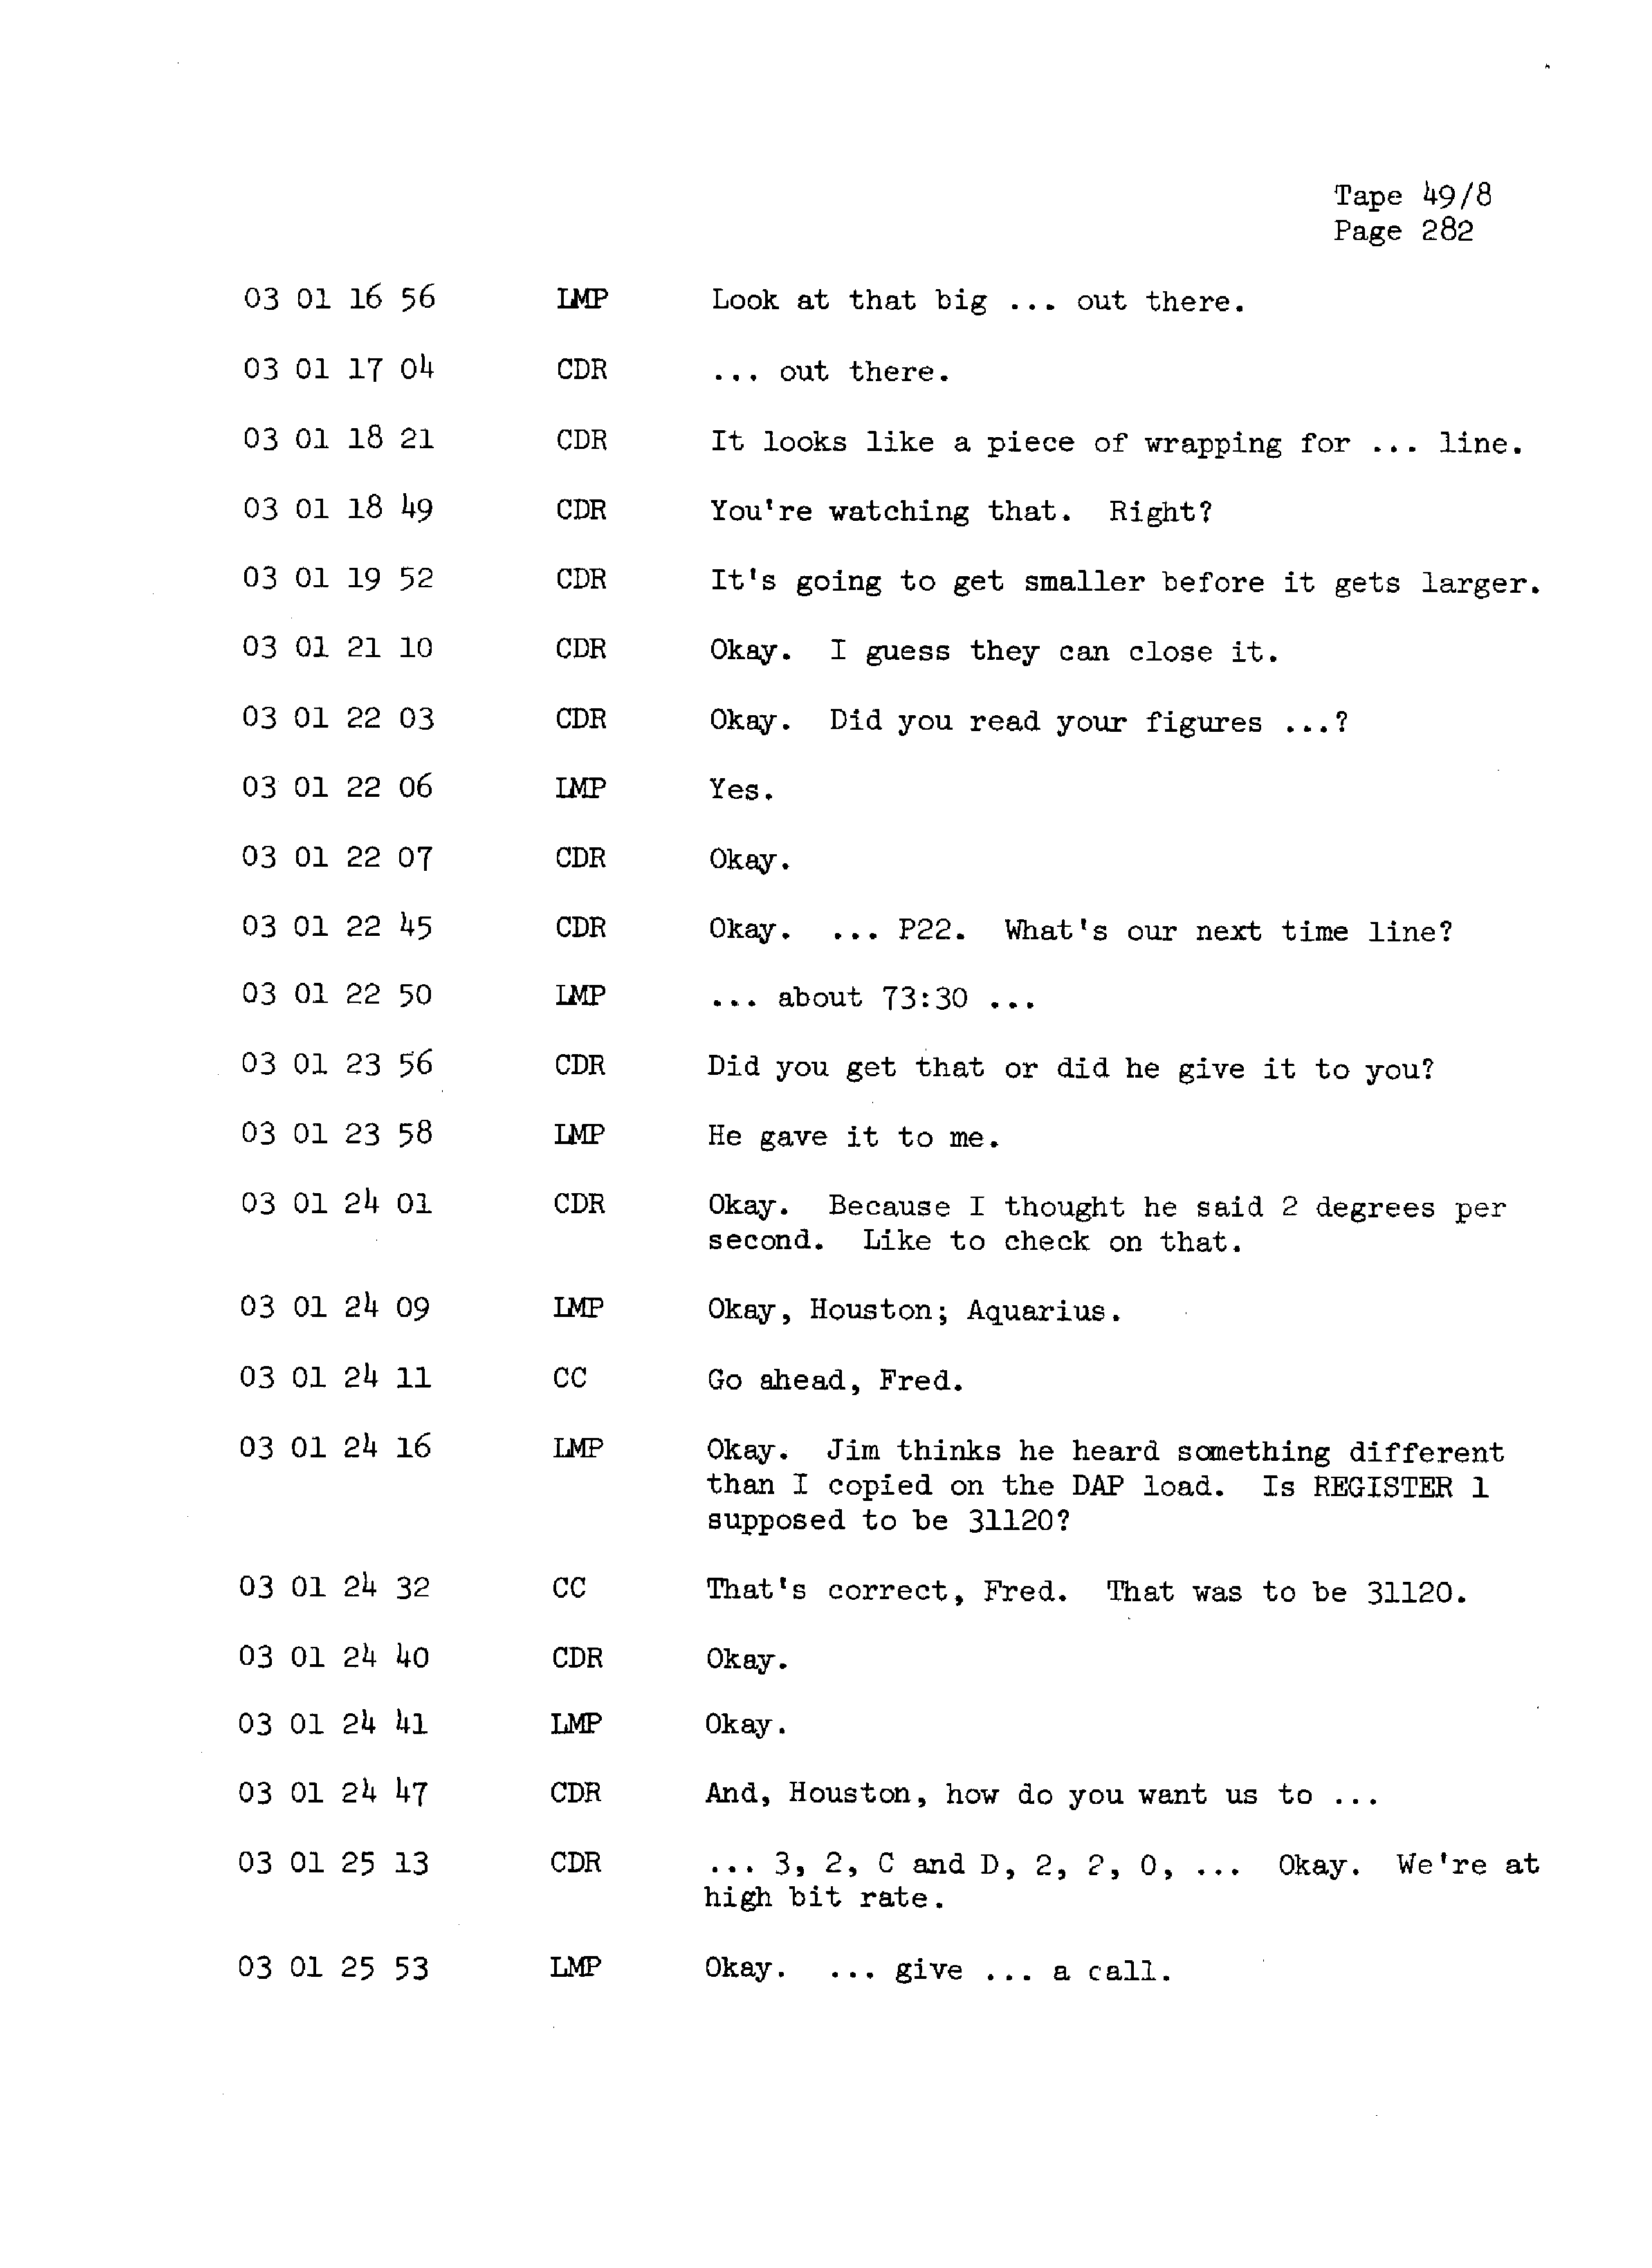 Page 289 of Apollo 13’s original transcript